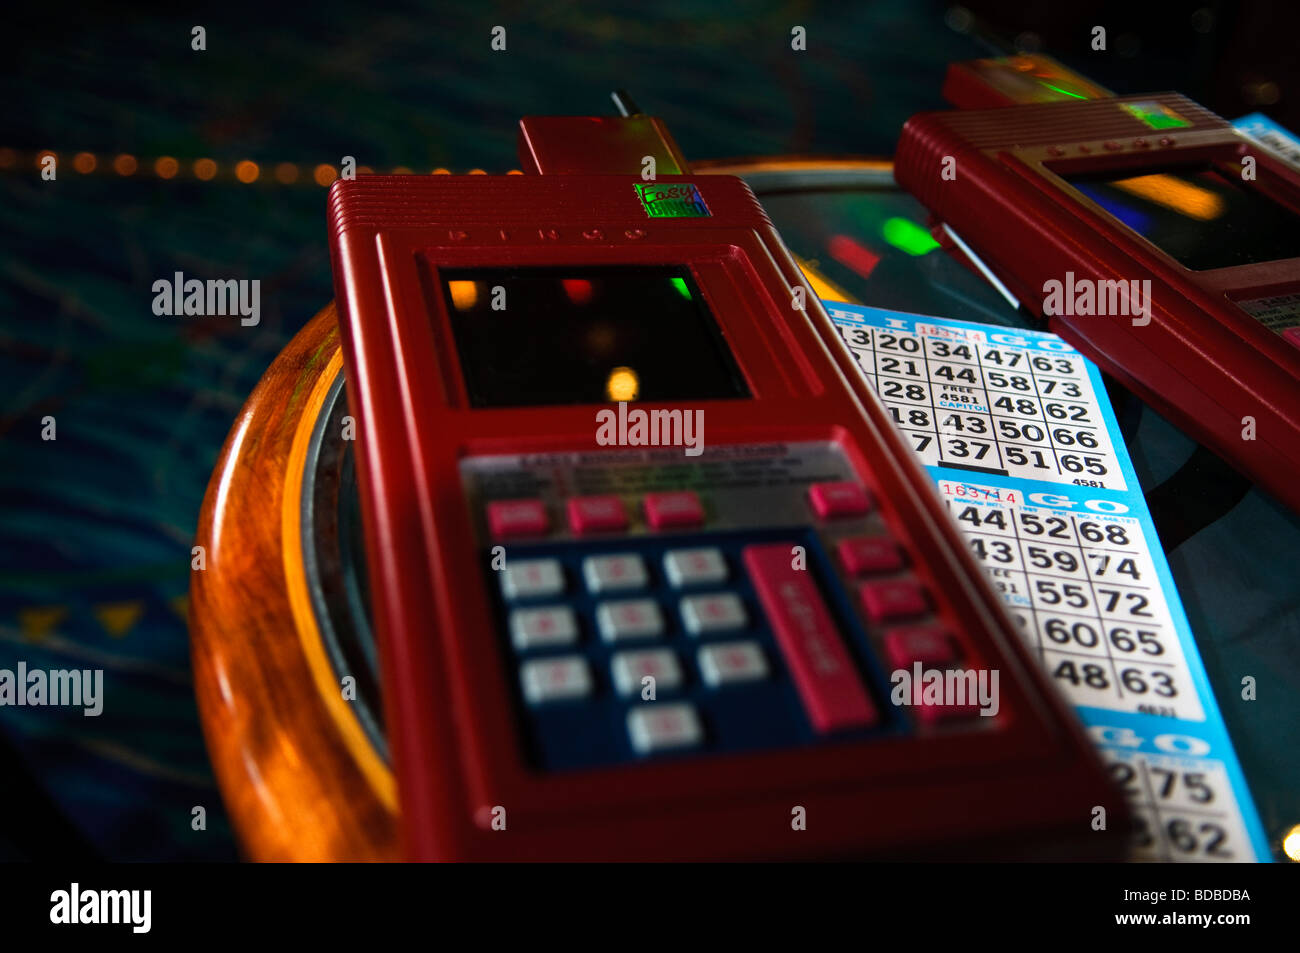 Le Bingo électronique à bord du Norwegian Star Cruise Line Banque D'Images